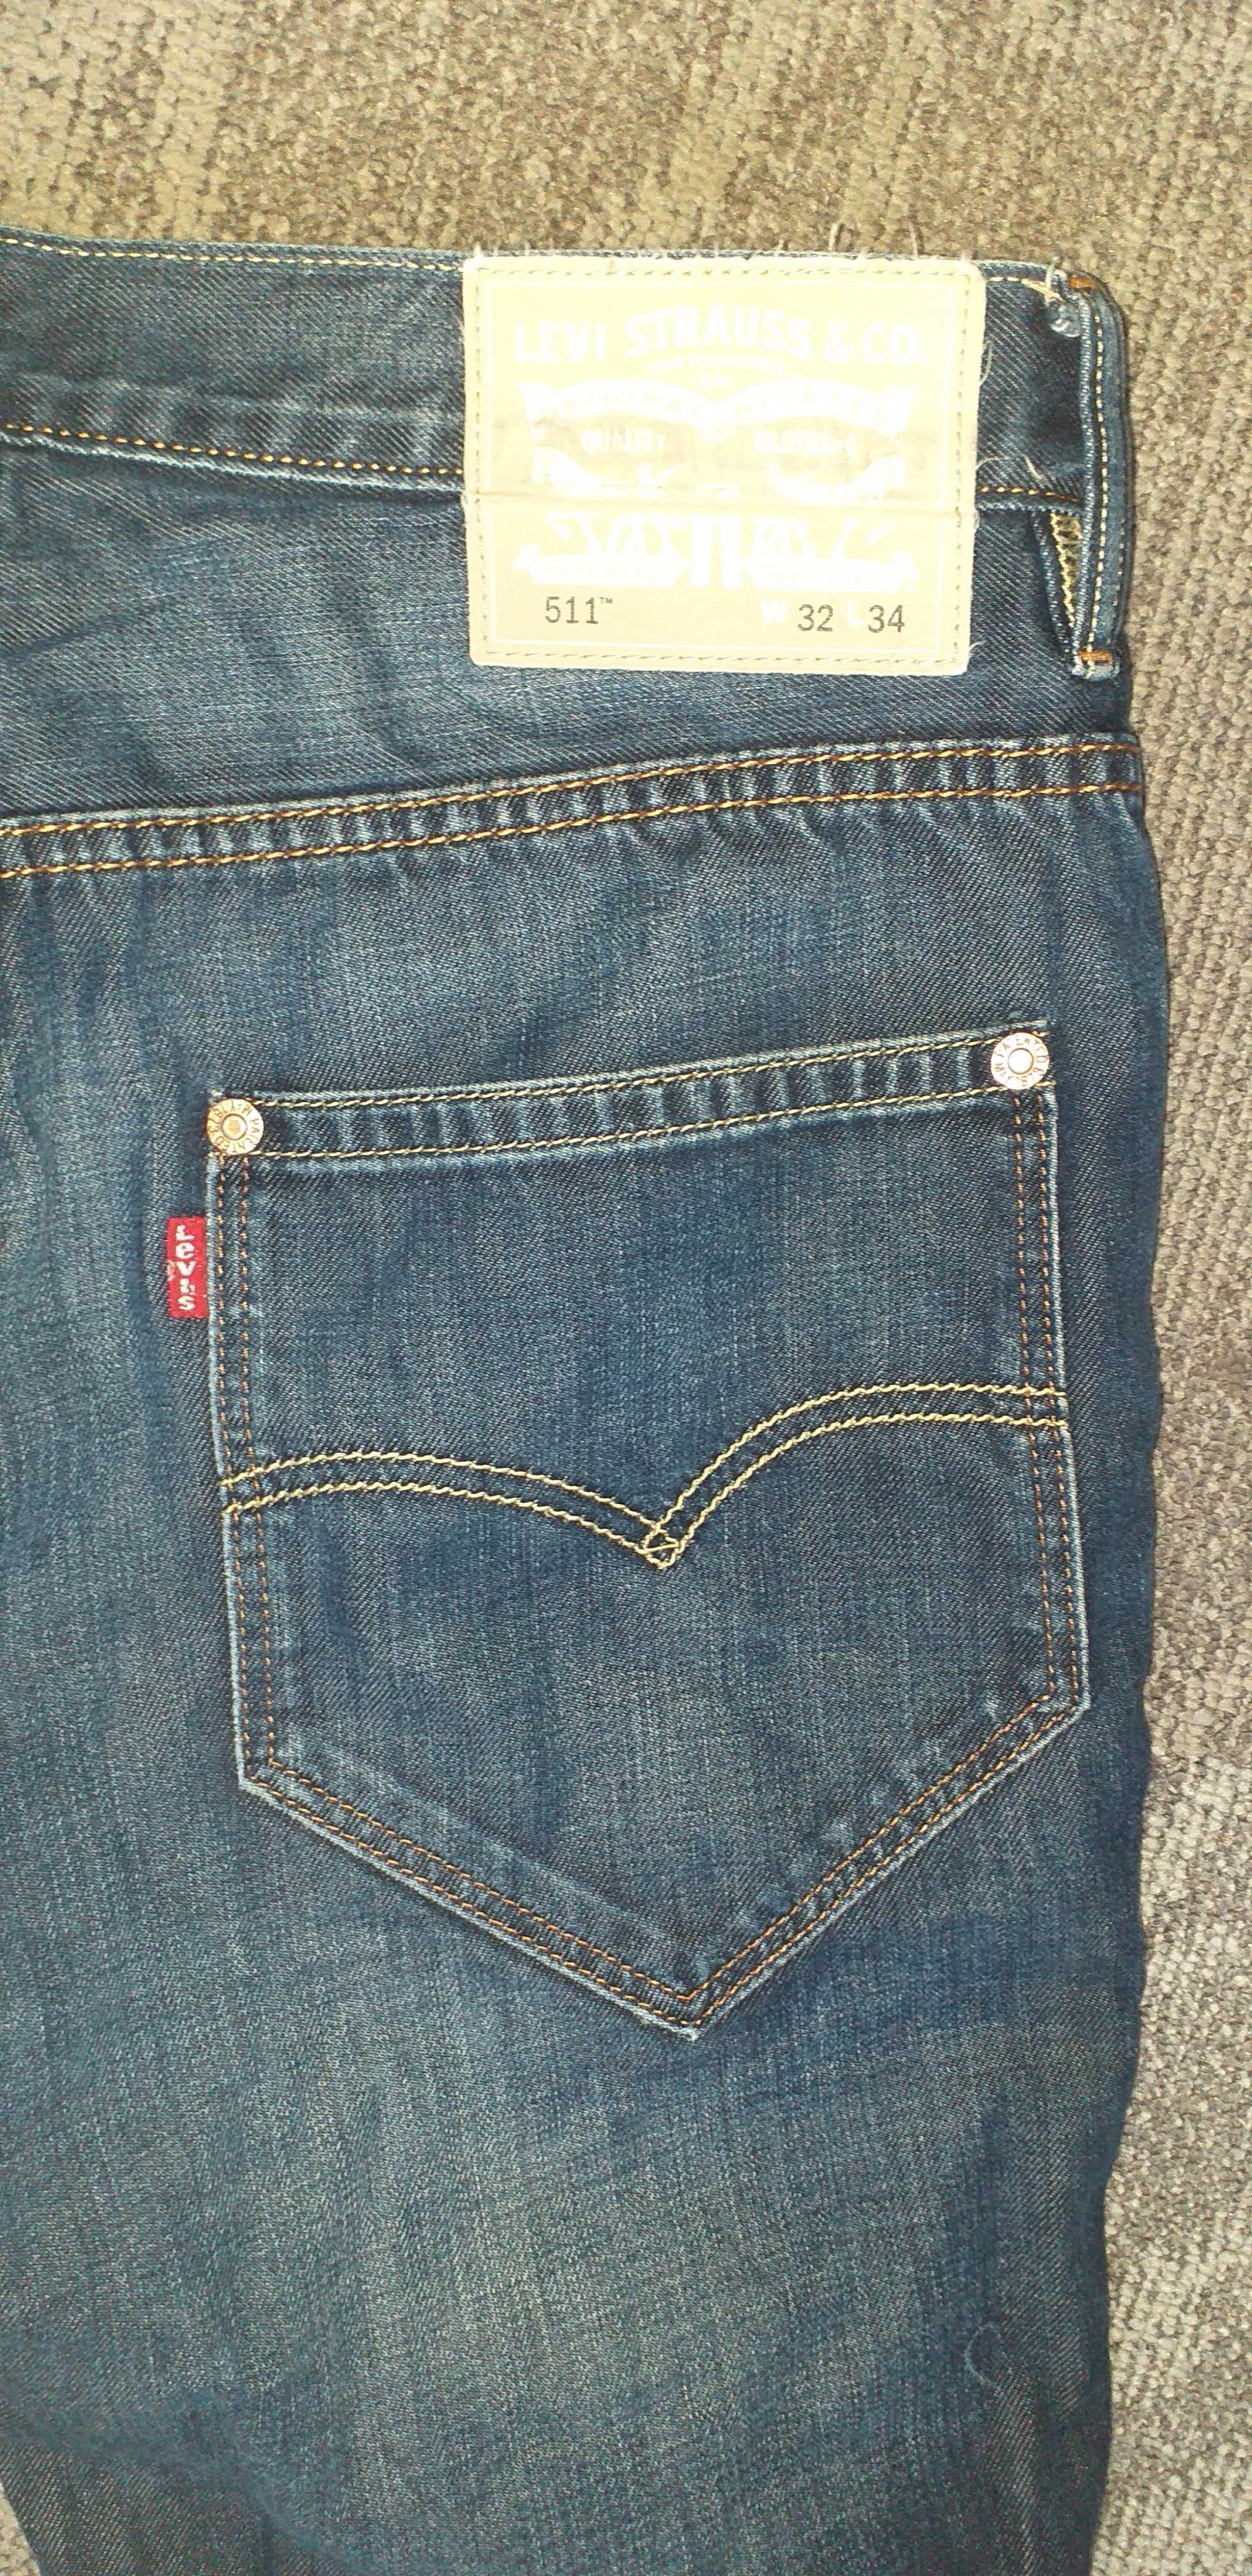 Levis 511 Spodnie jeans męskie roz W32L34